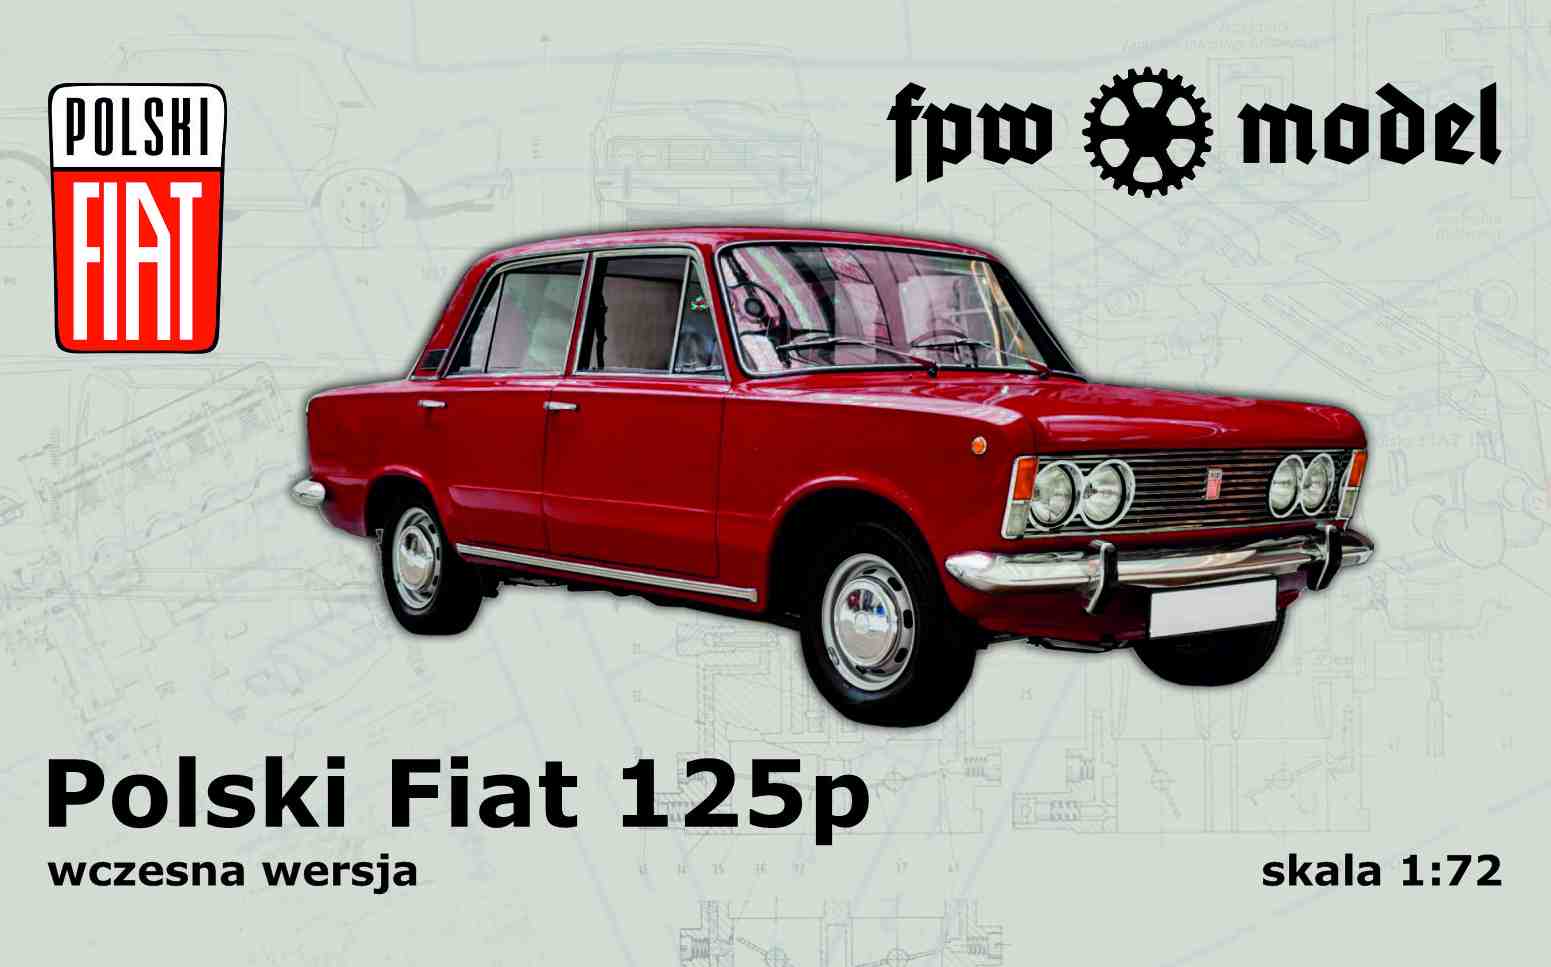 Polski Fiat 125p - early